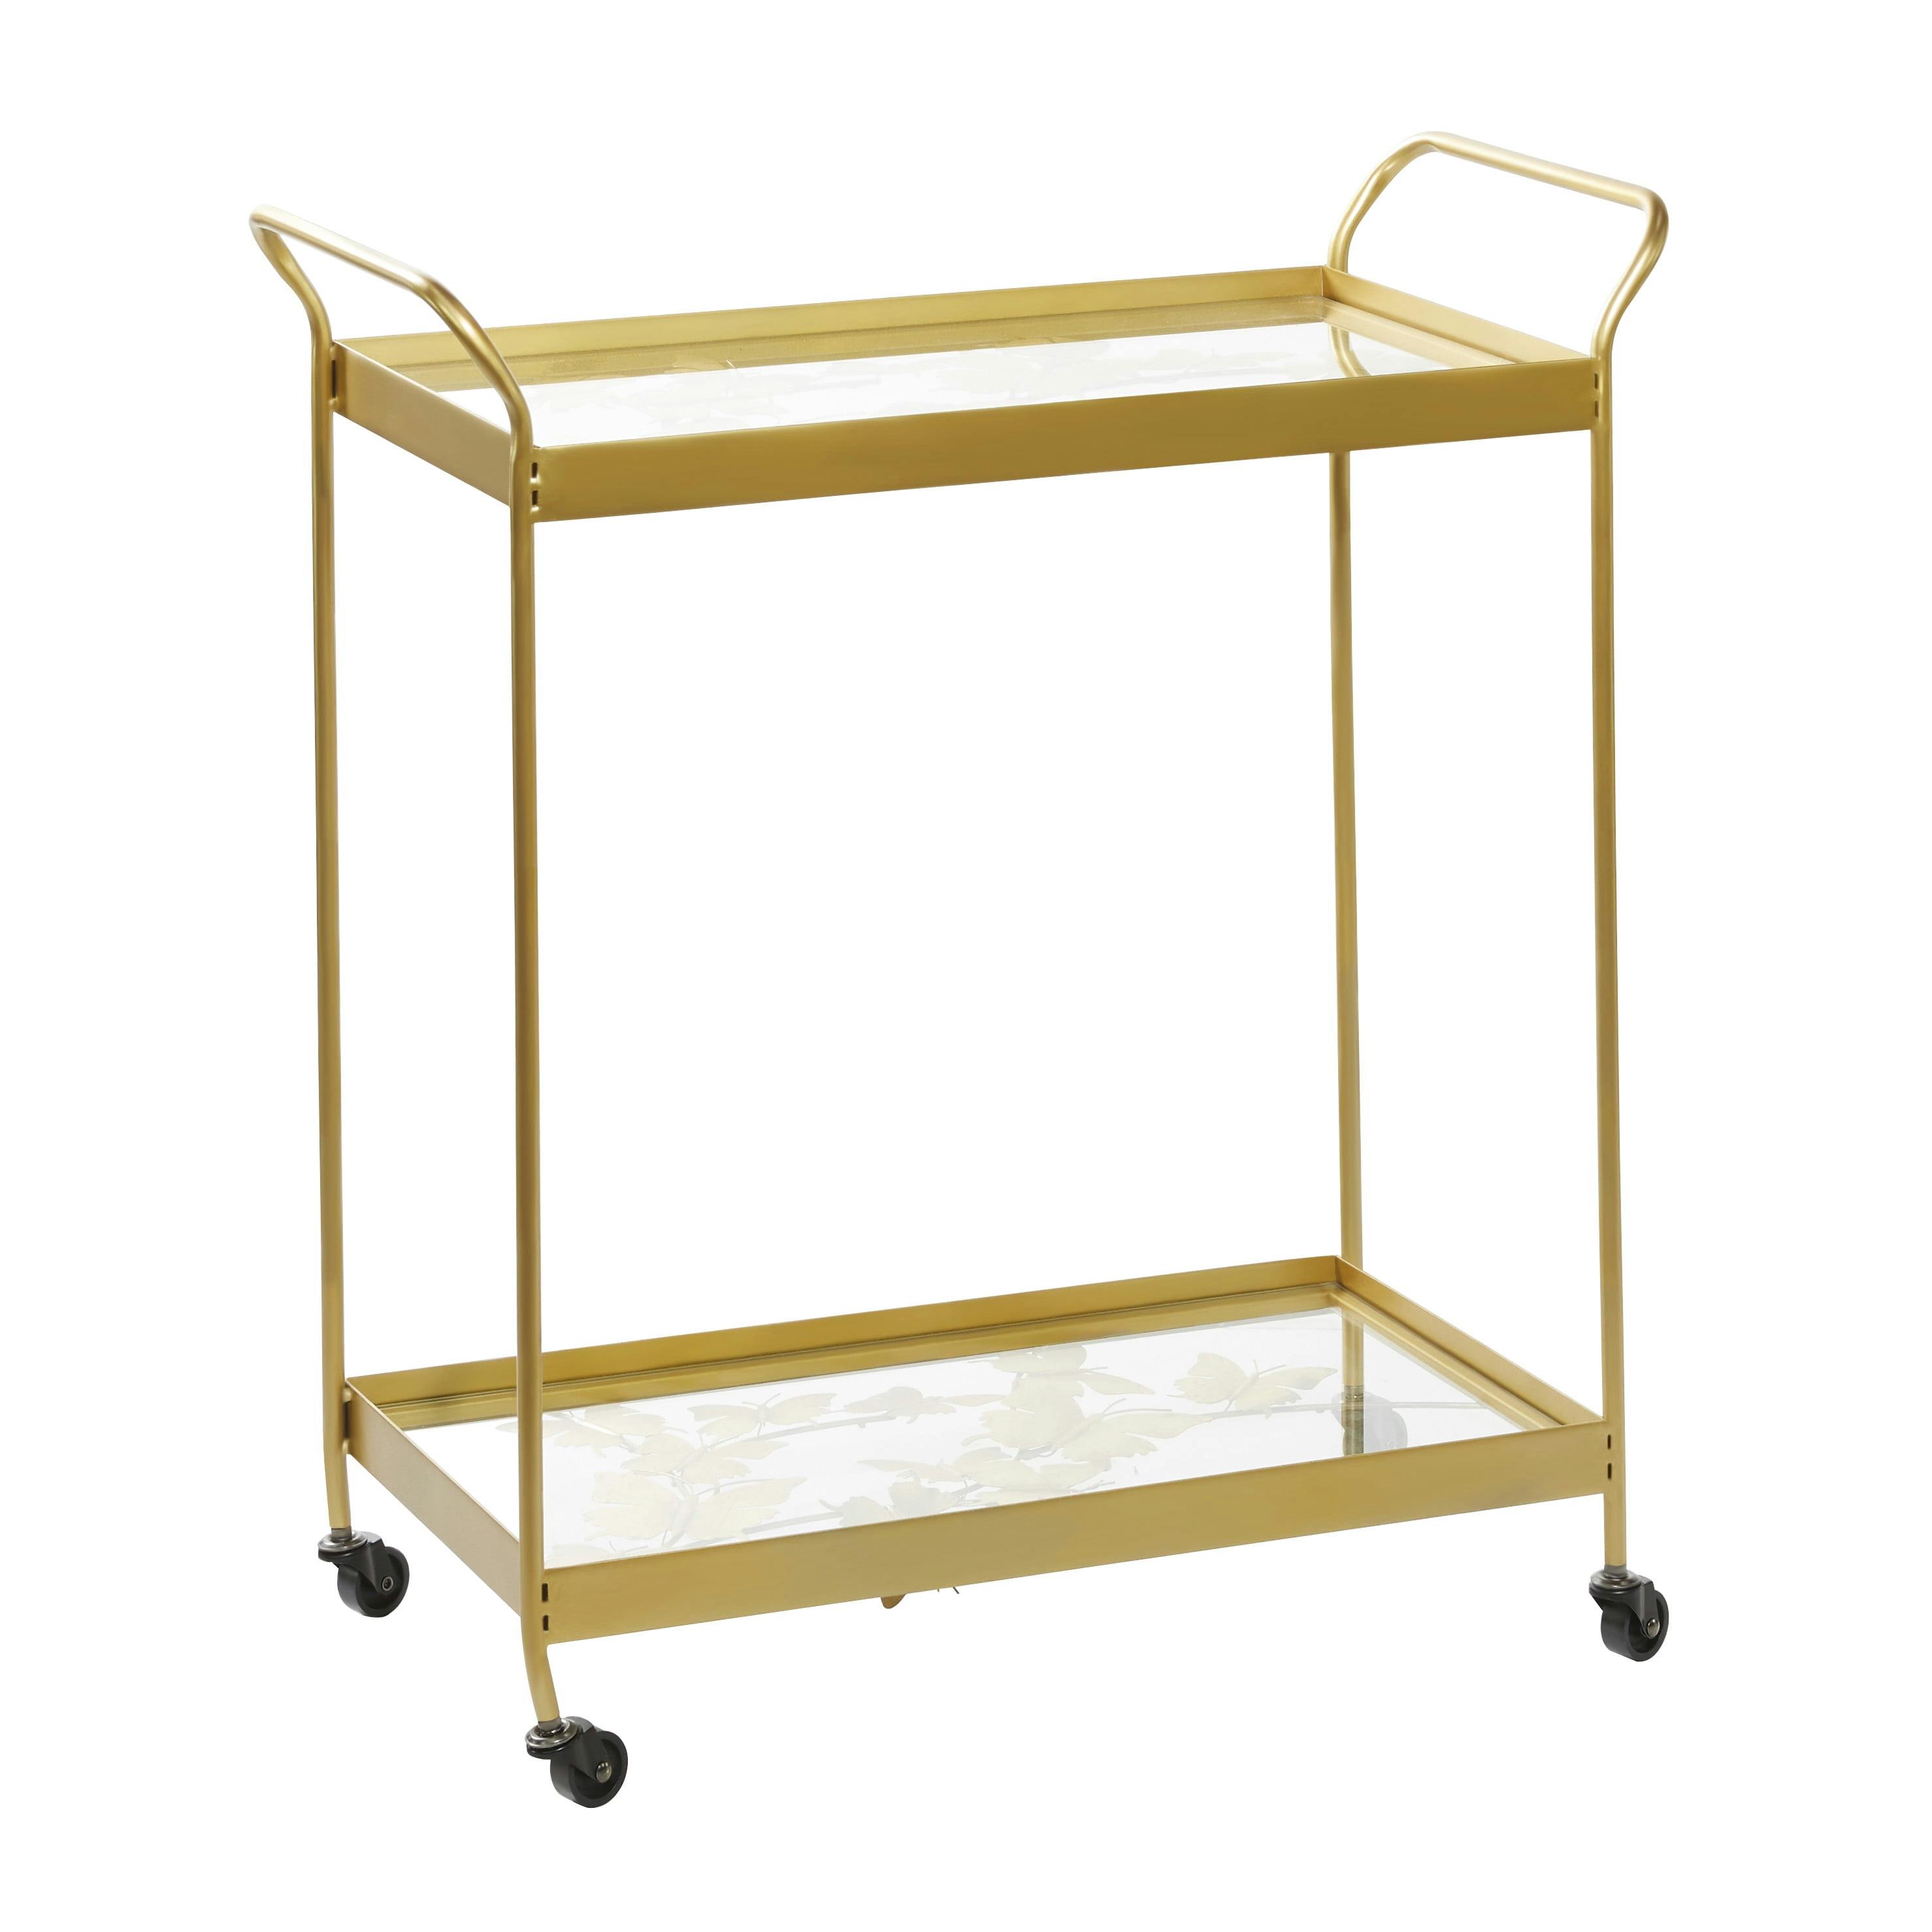 Sleek Gold Contemporary Rectangular Bar Cart with Glass Shelves